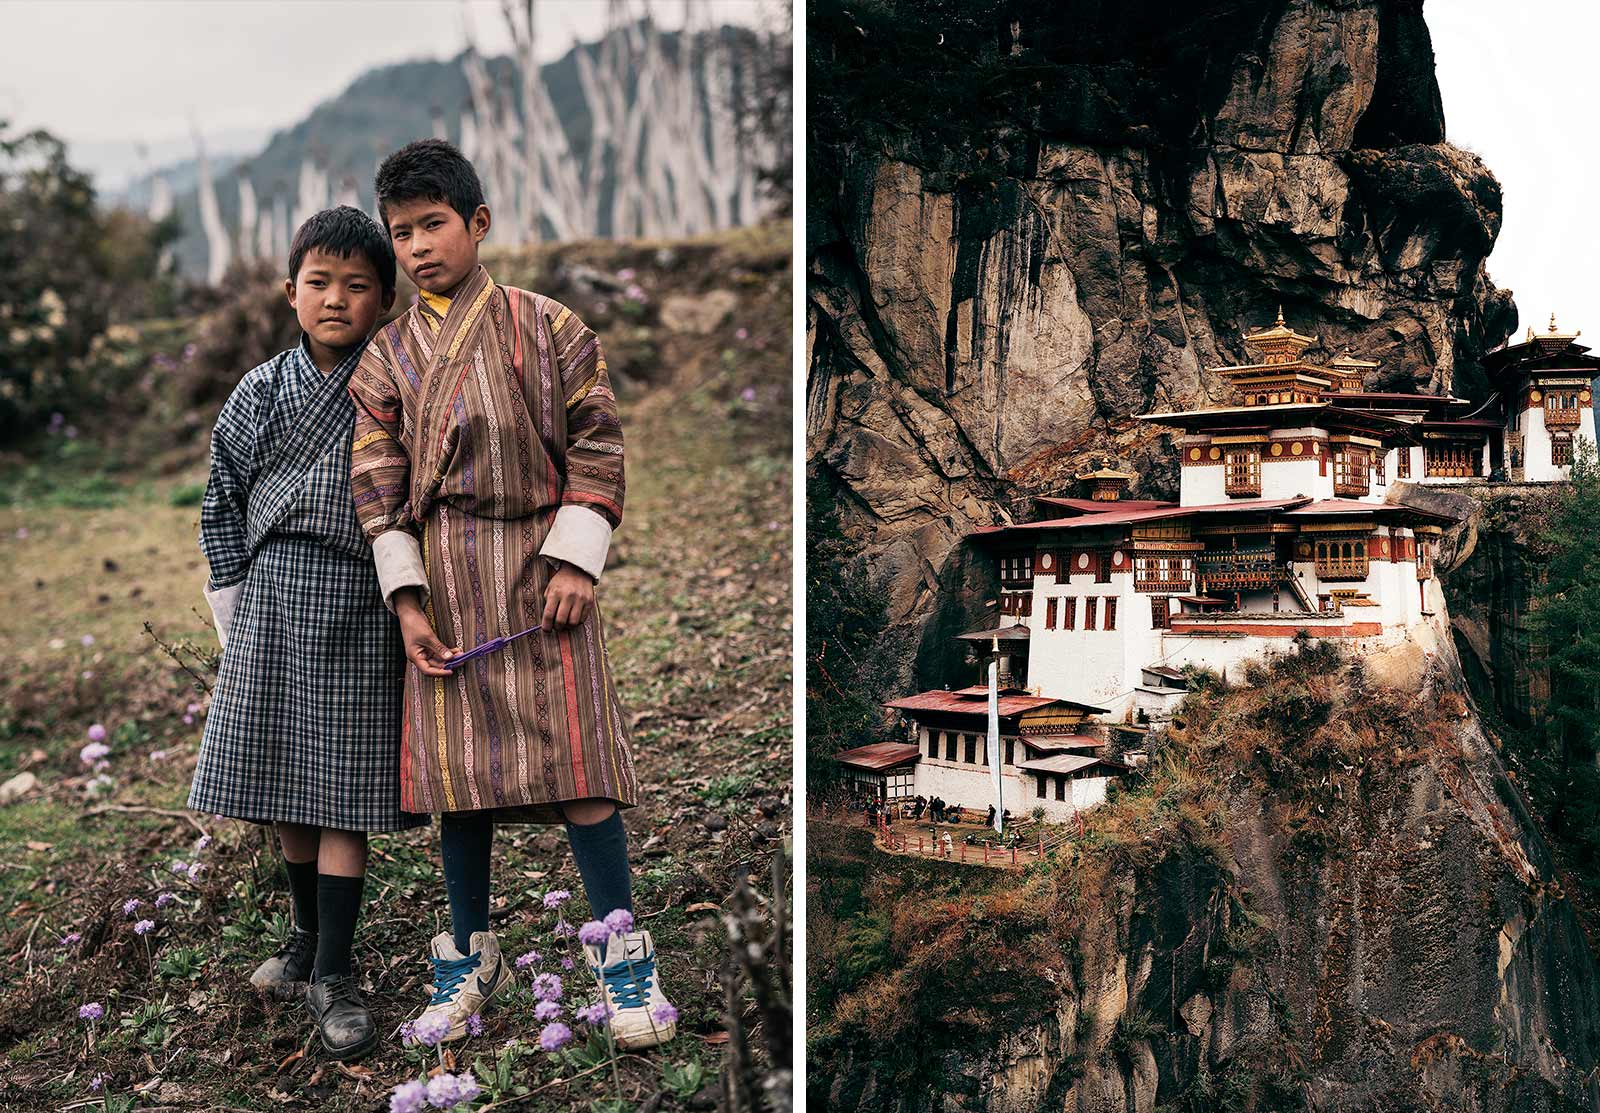 Kids and houses on mountains Bhutan